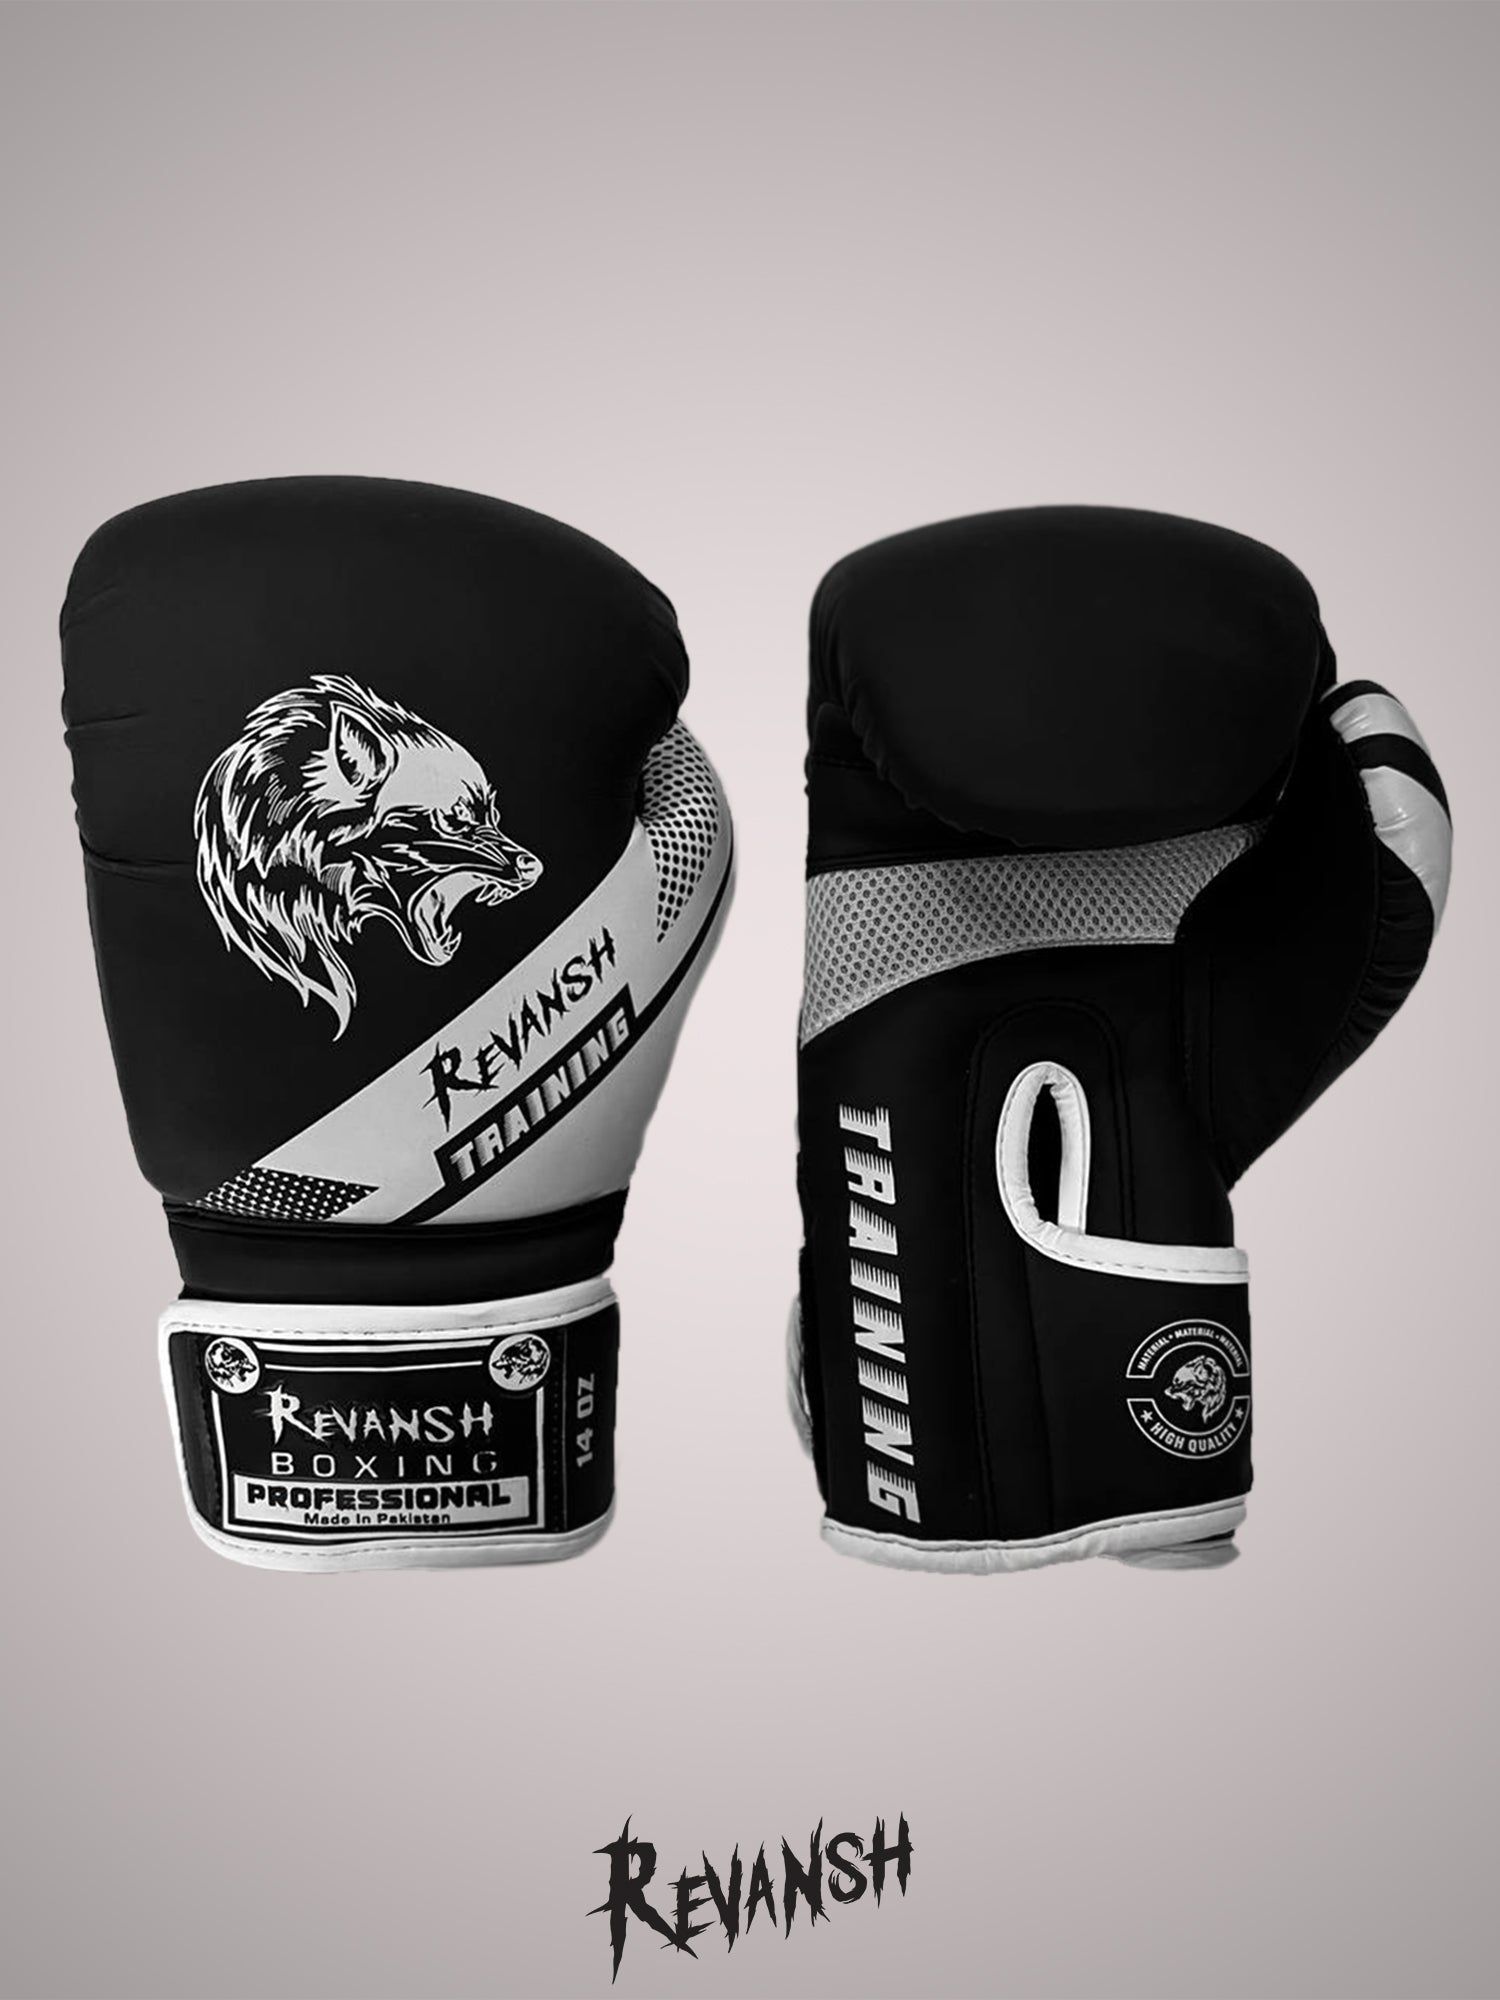 Boxing gloves REVANSH NEO, black and white